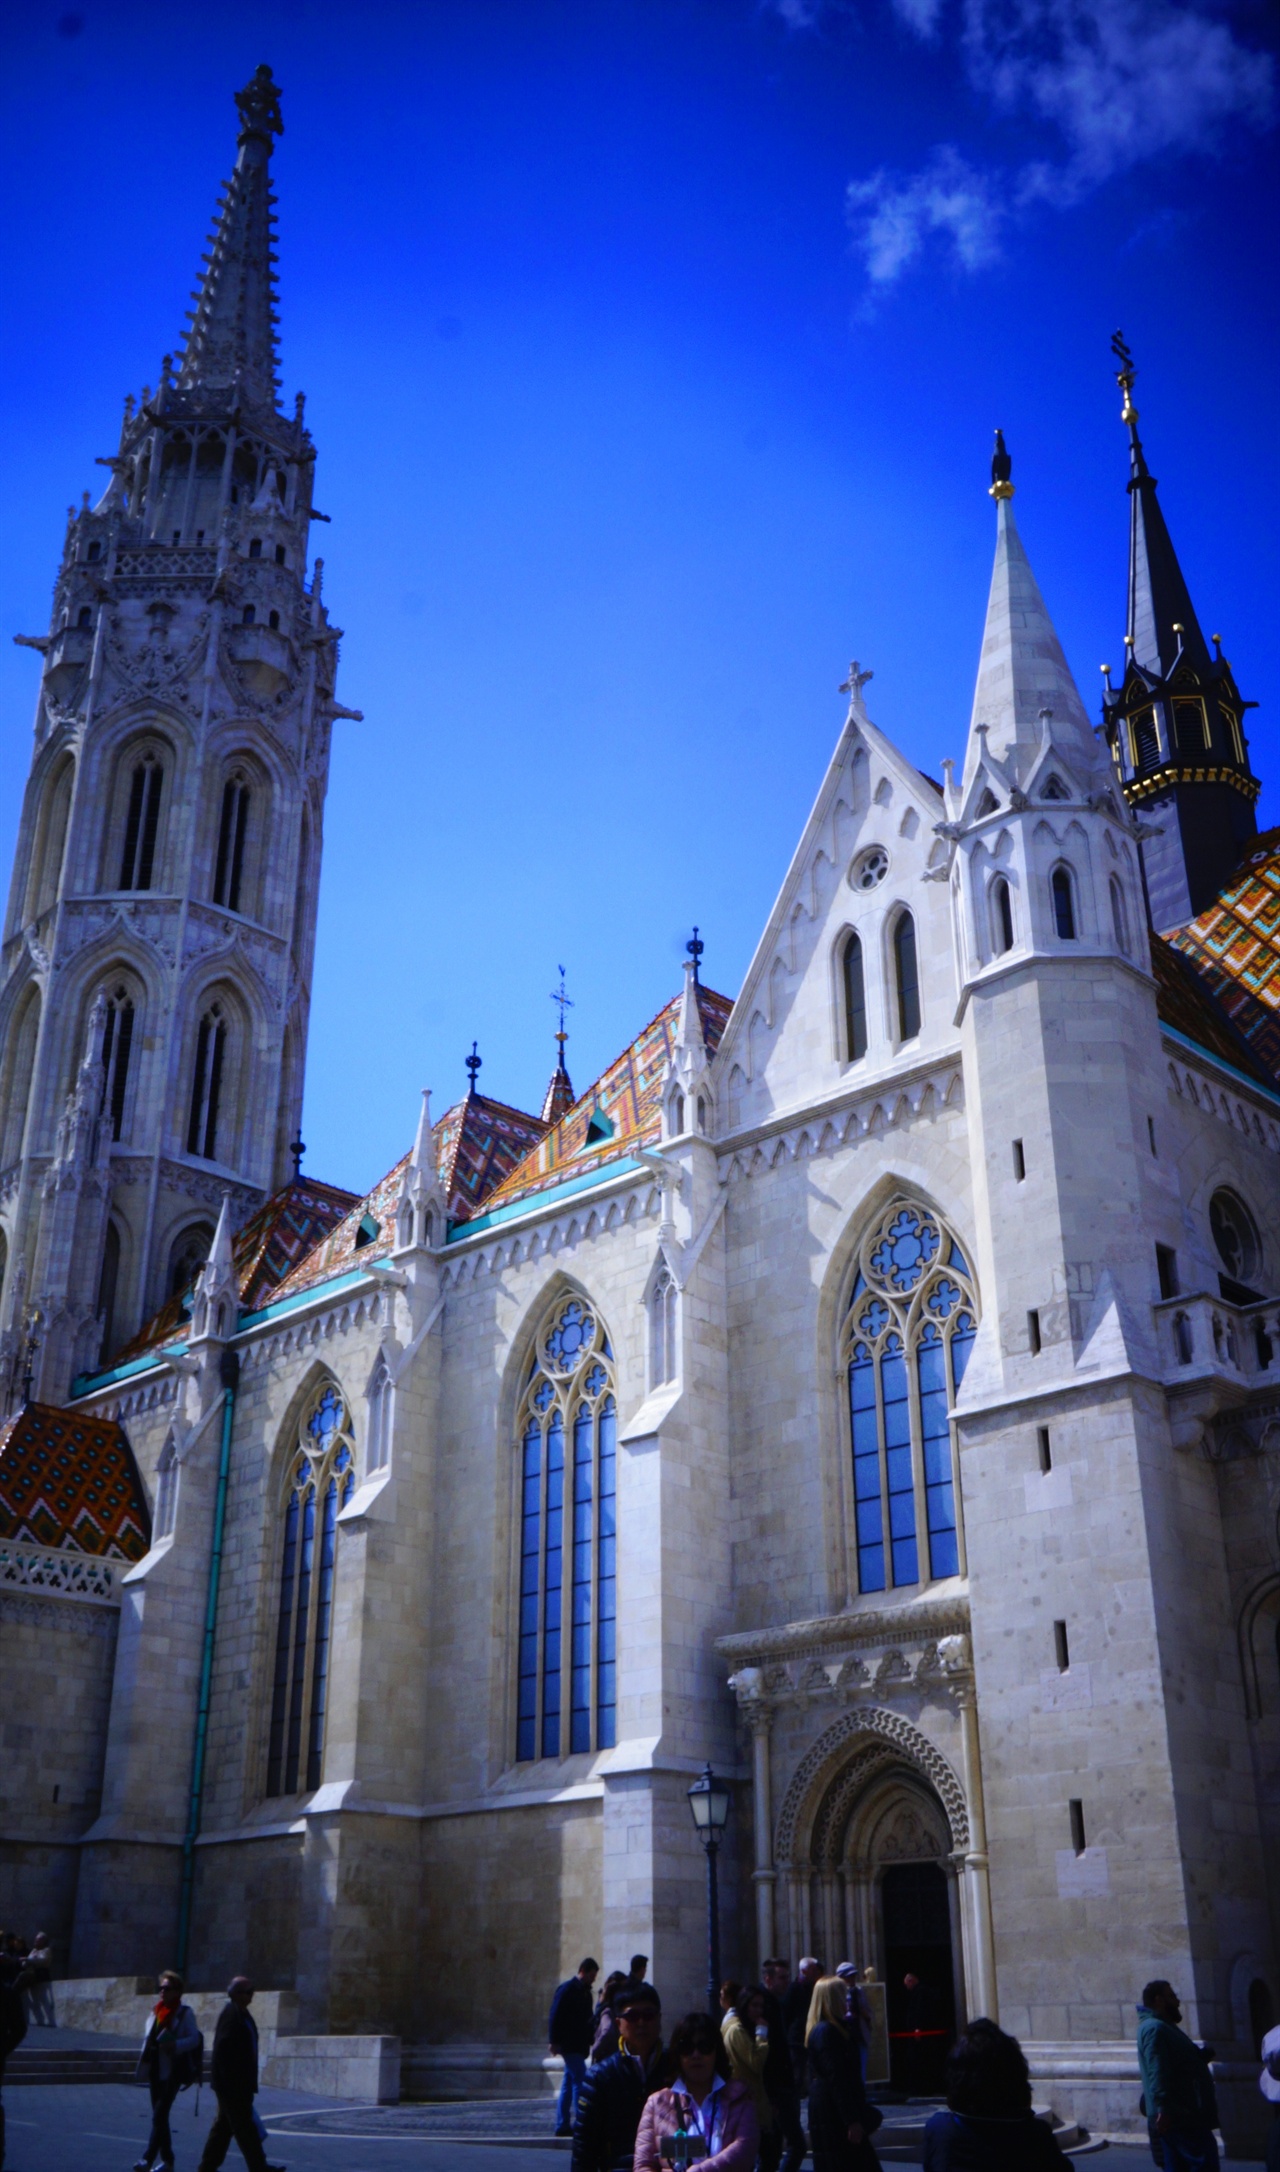 헝가리의 세종대왕이라 불린 마차시 왕의 이름을 본뜬 성당